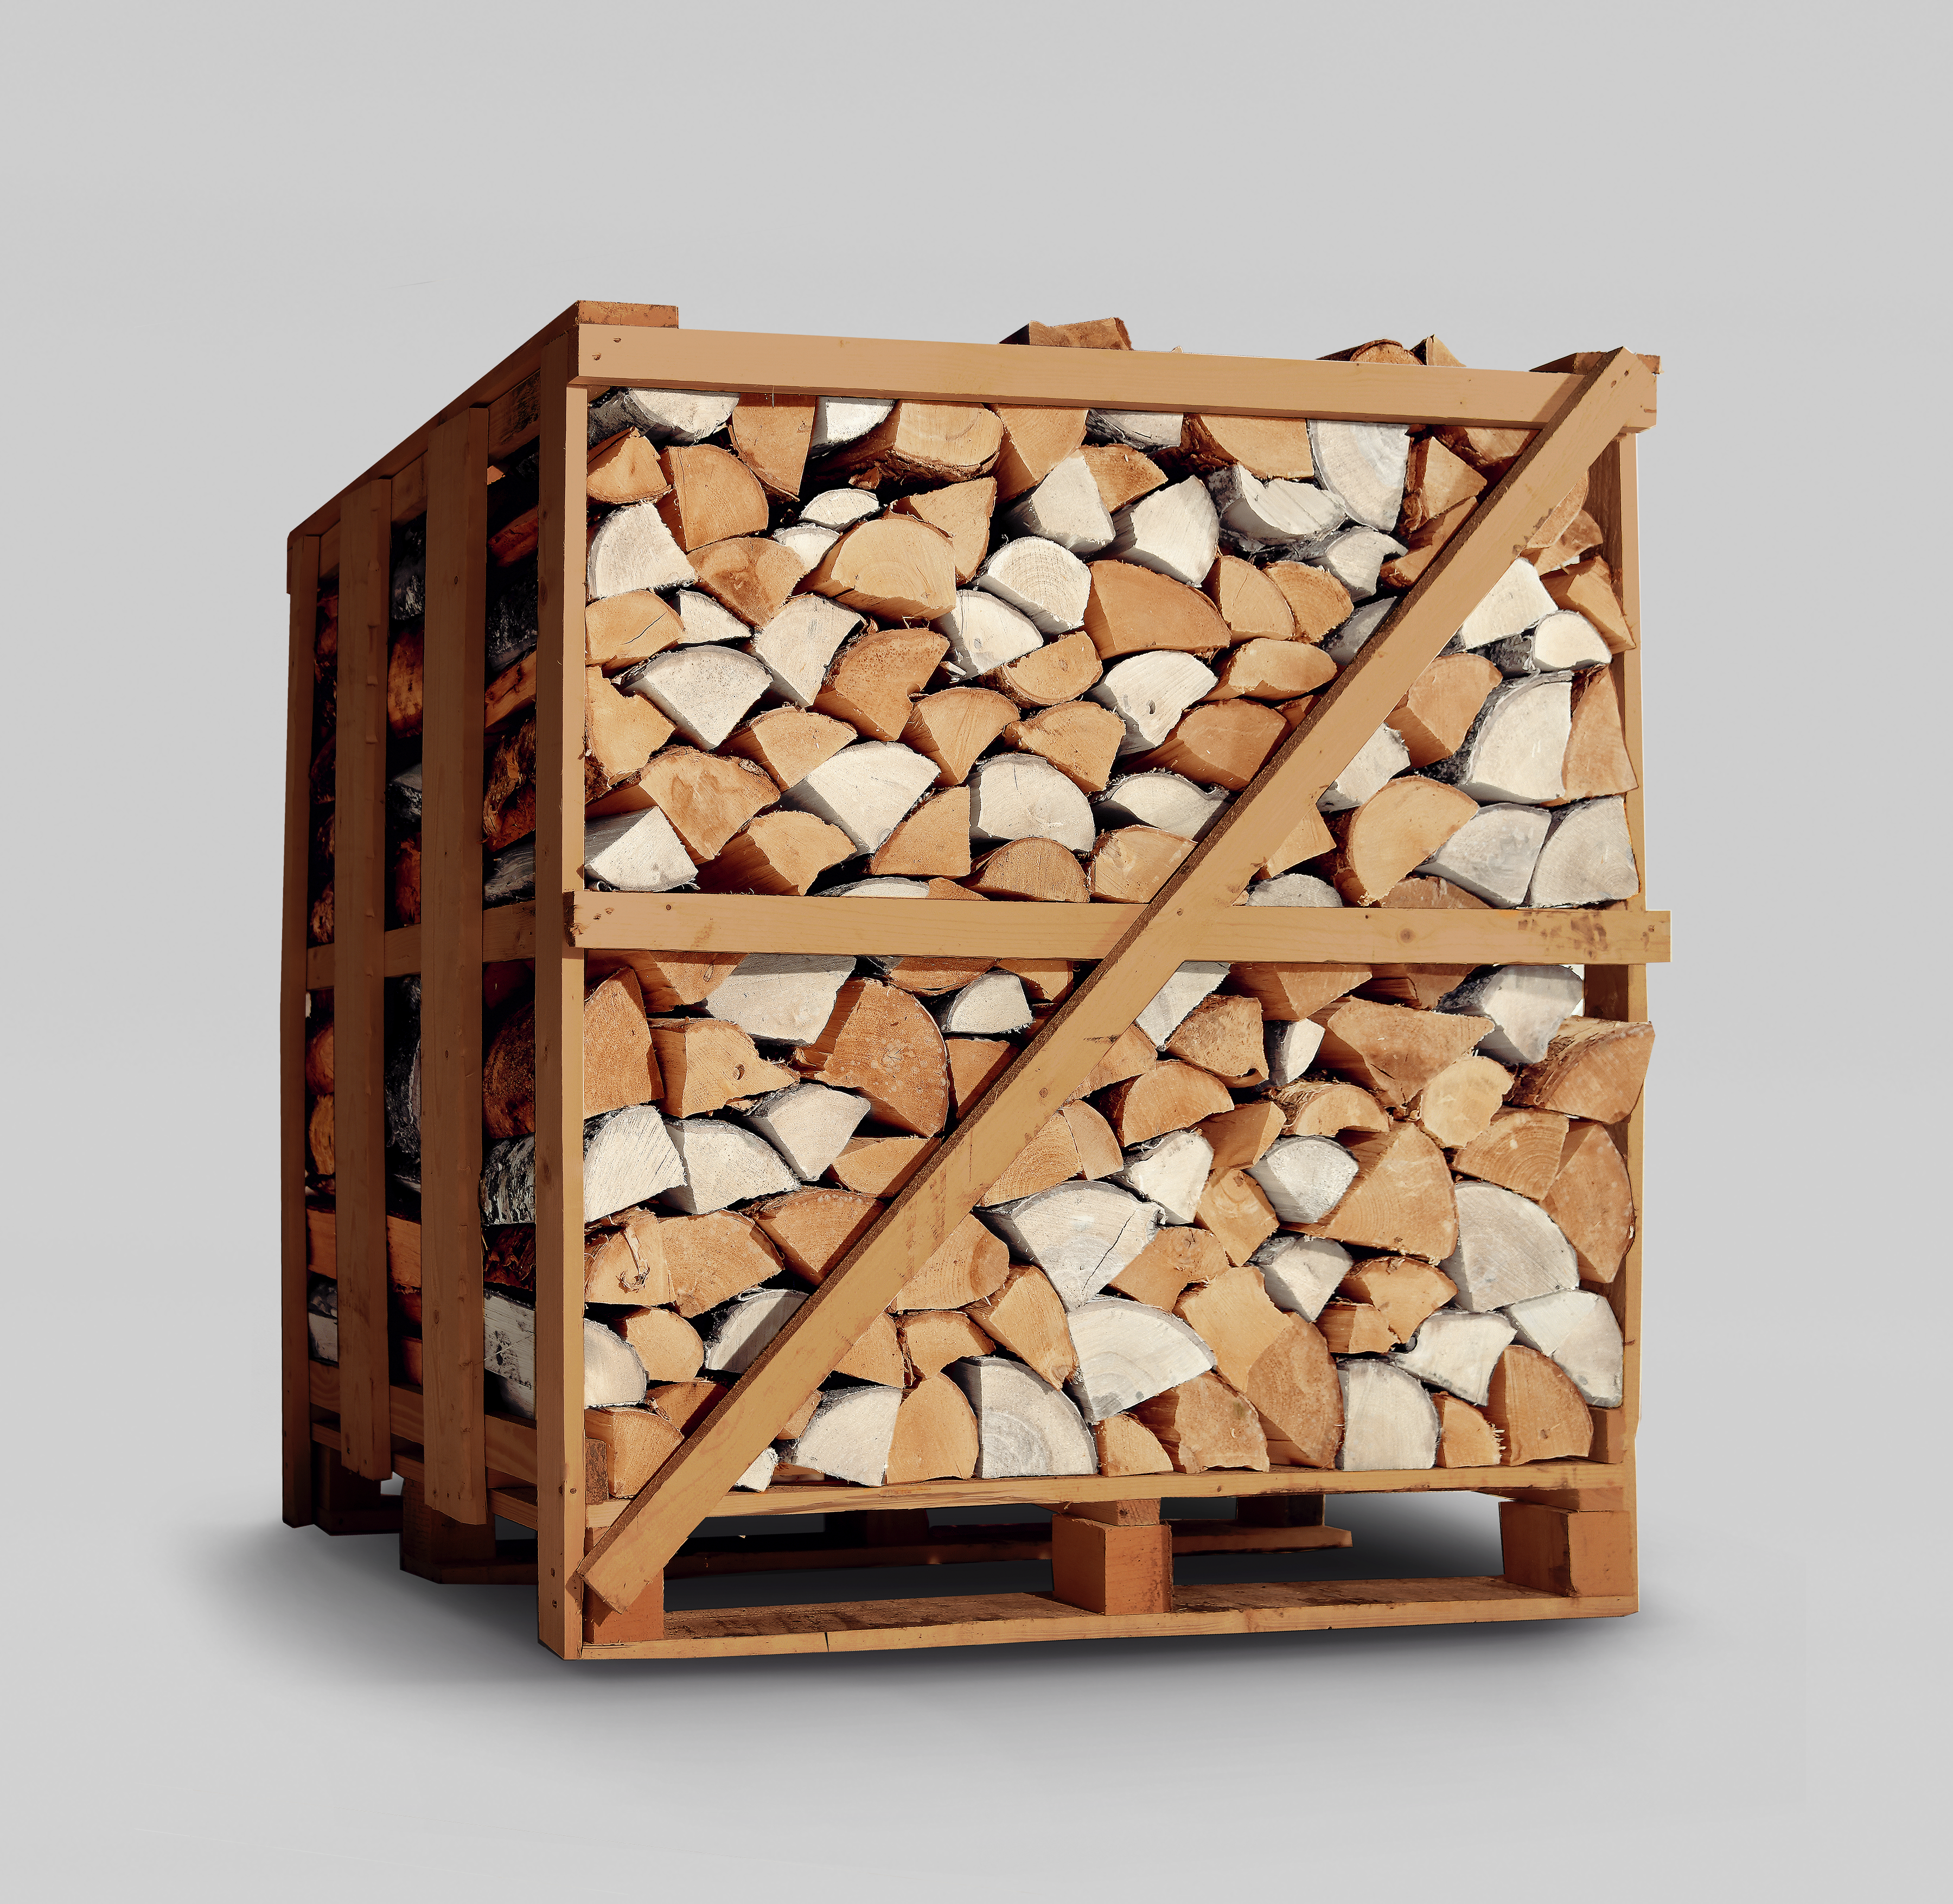 Купить кубометр дров. Дрова. Эко дрова. Березовые дрова. Ящик для дров.